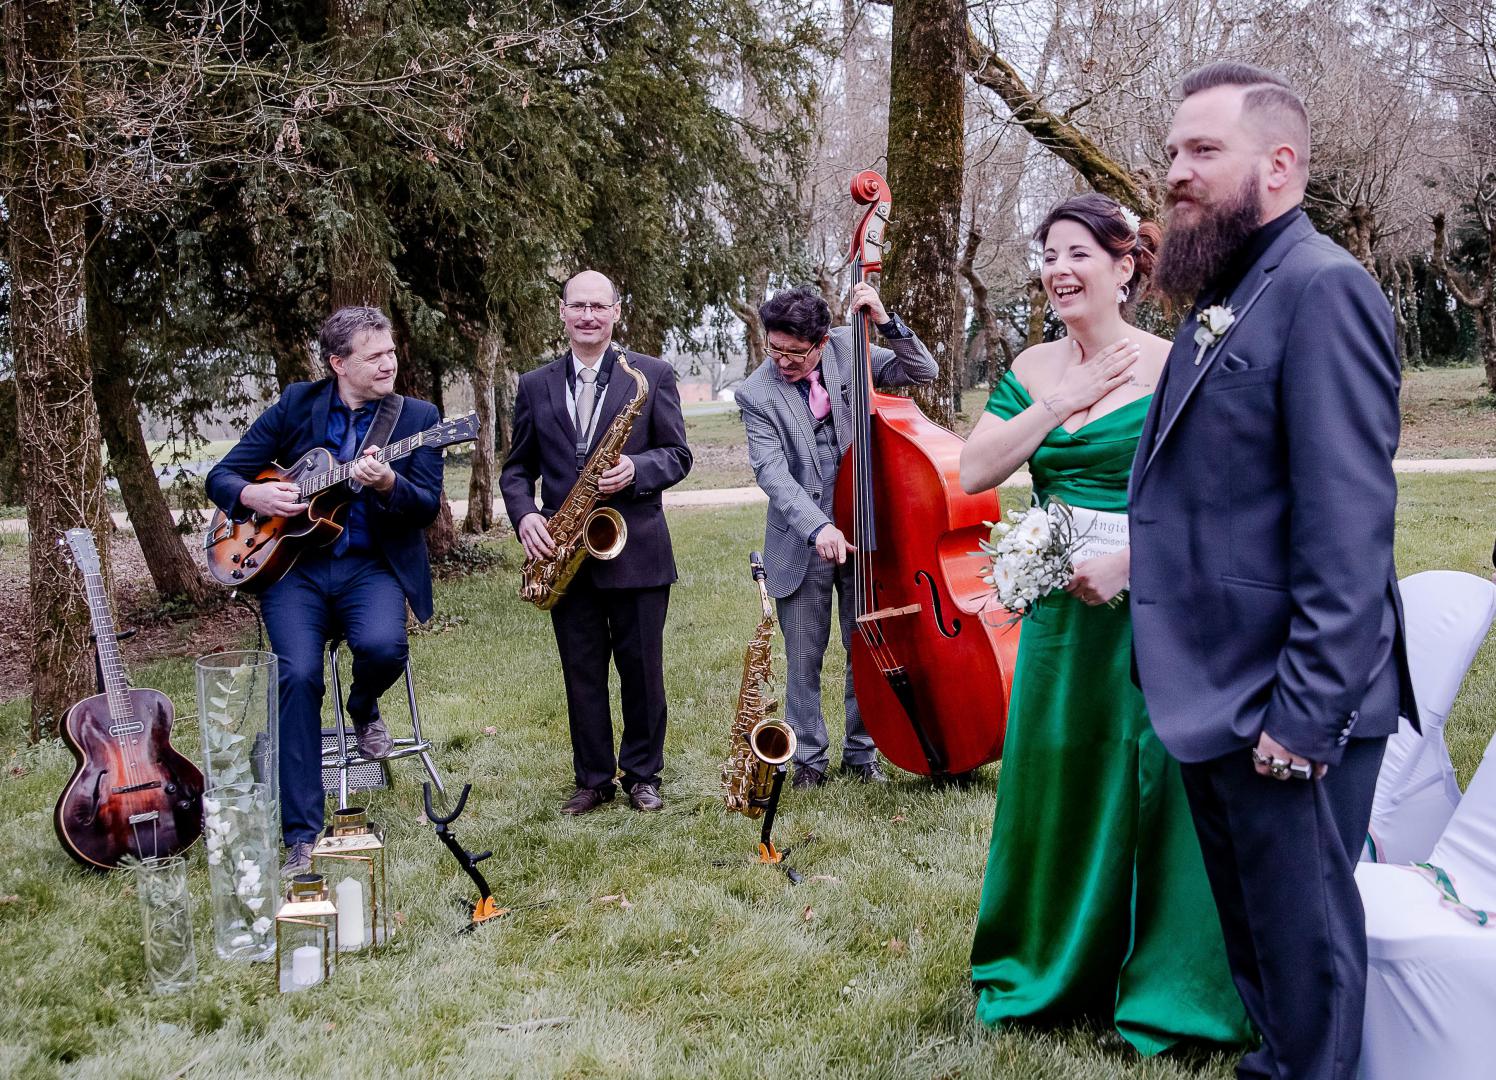 Dimanche 24 mars 2019, JAZZIN' TOWN (en formule Trio Saxophone, Guitare et Contrebasse) était l'un des prestataires du shooting mariage organisé au Domaine de la Barbinière à St-Laurent-sur-Sèvre (85).